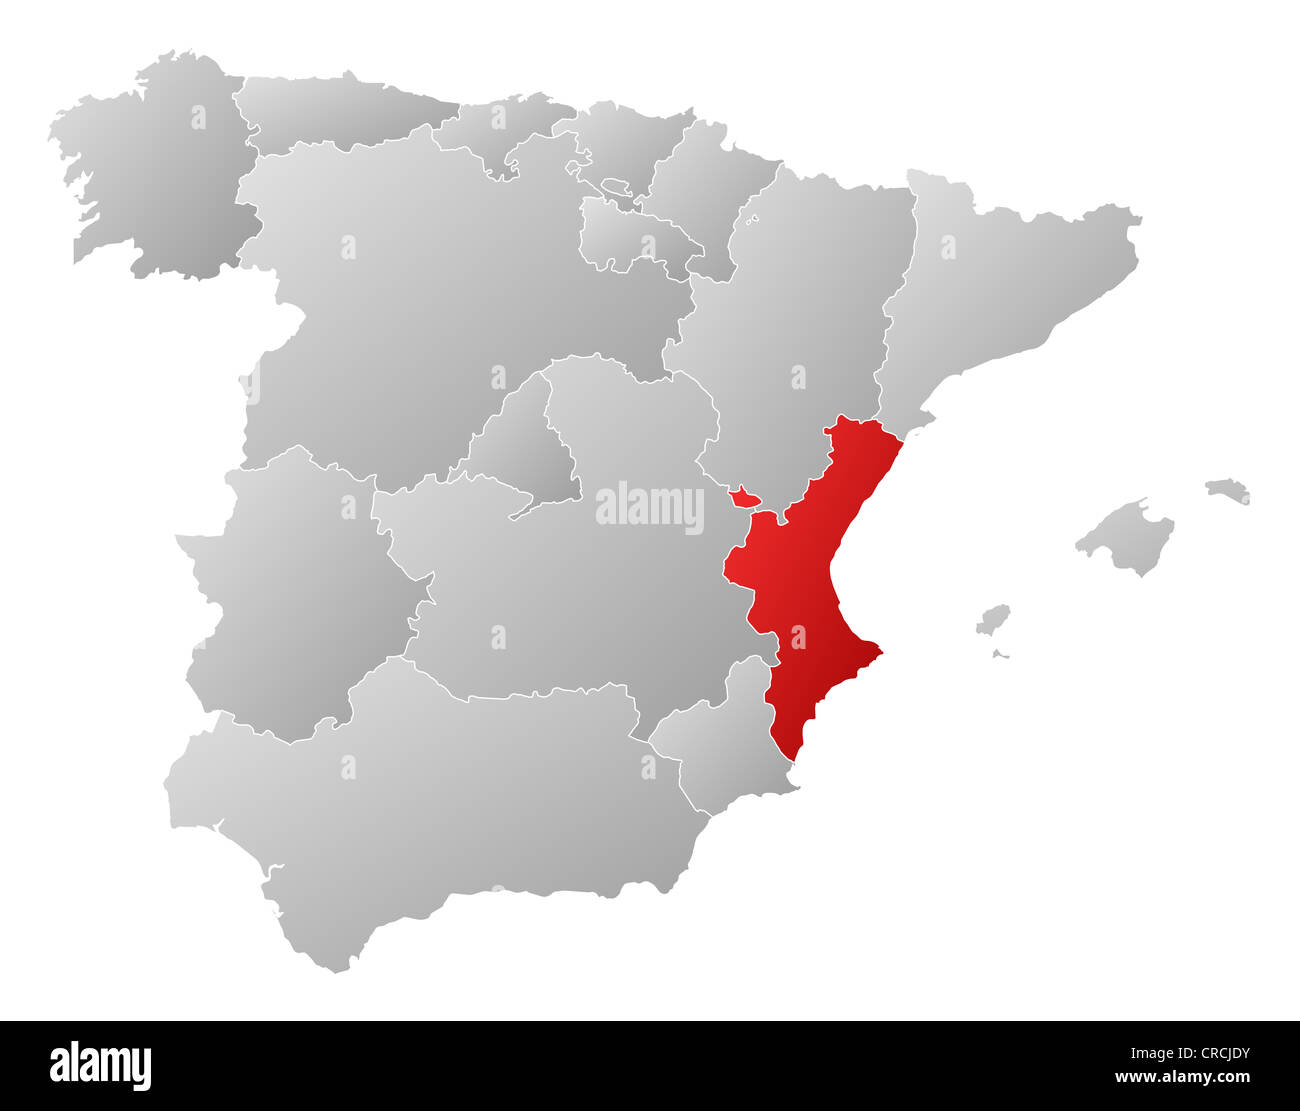 Mapa político de España con las diversas regiones donde la Comunidad  Valenciana está resaltada Fotografía de stock - Alamy